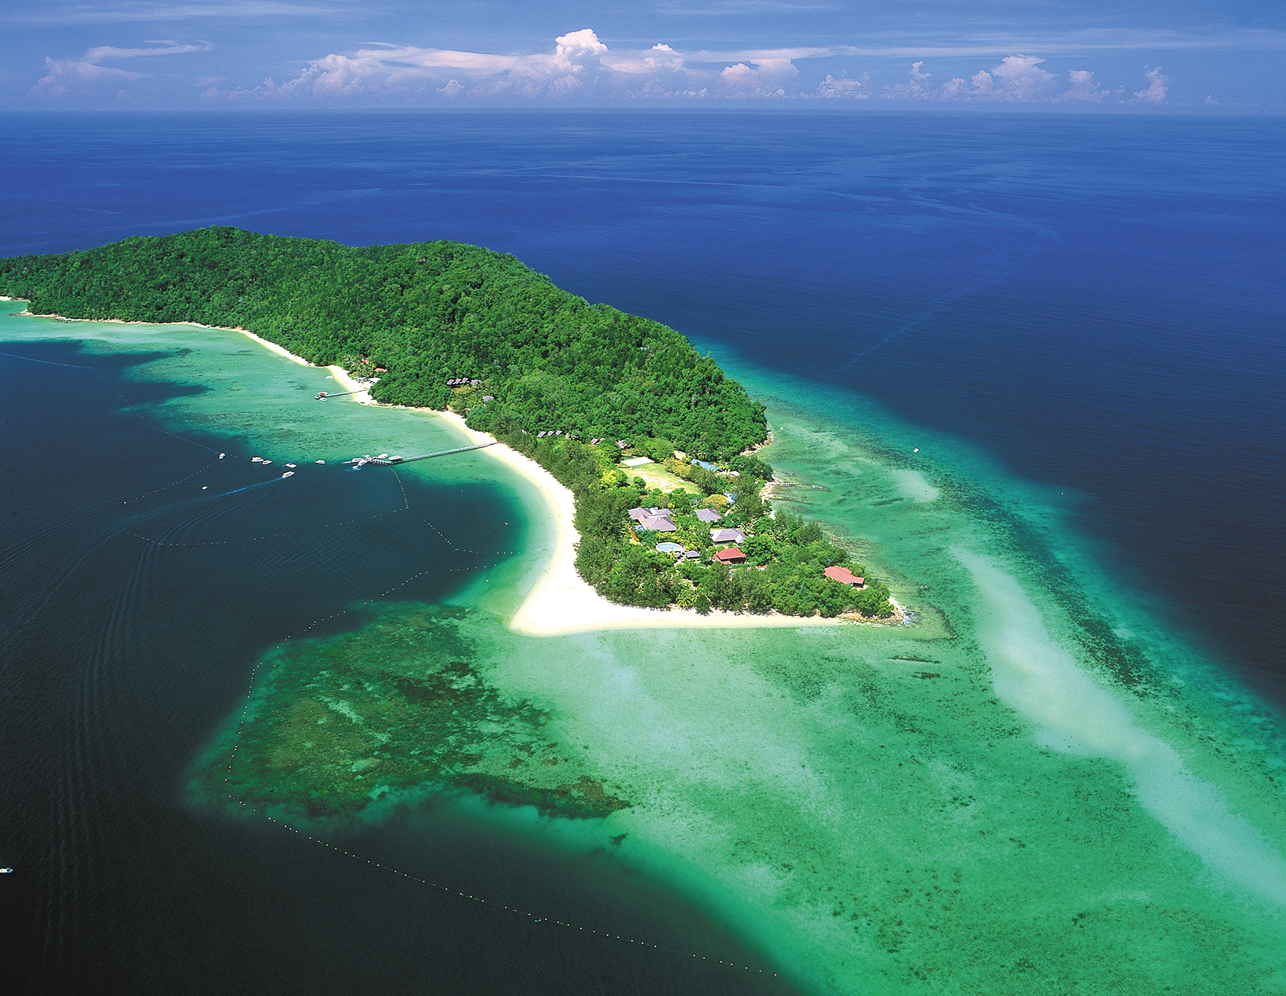 原创如果海上有仙境定是沙巴岛景色媲美马尔代夫来过便不曾离开